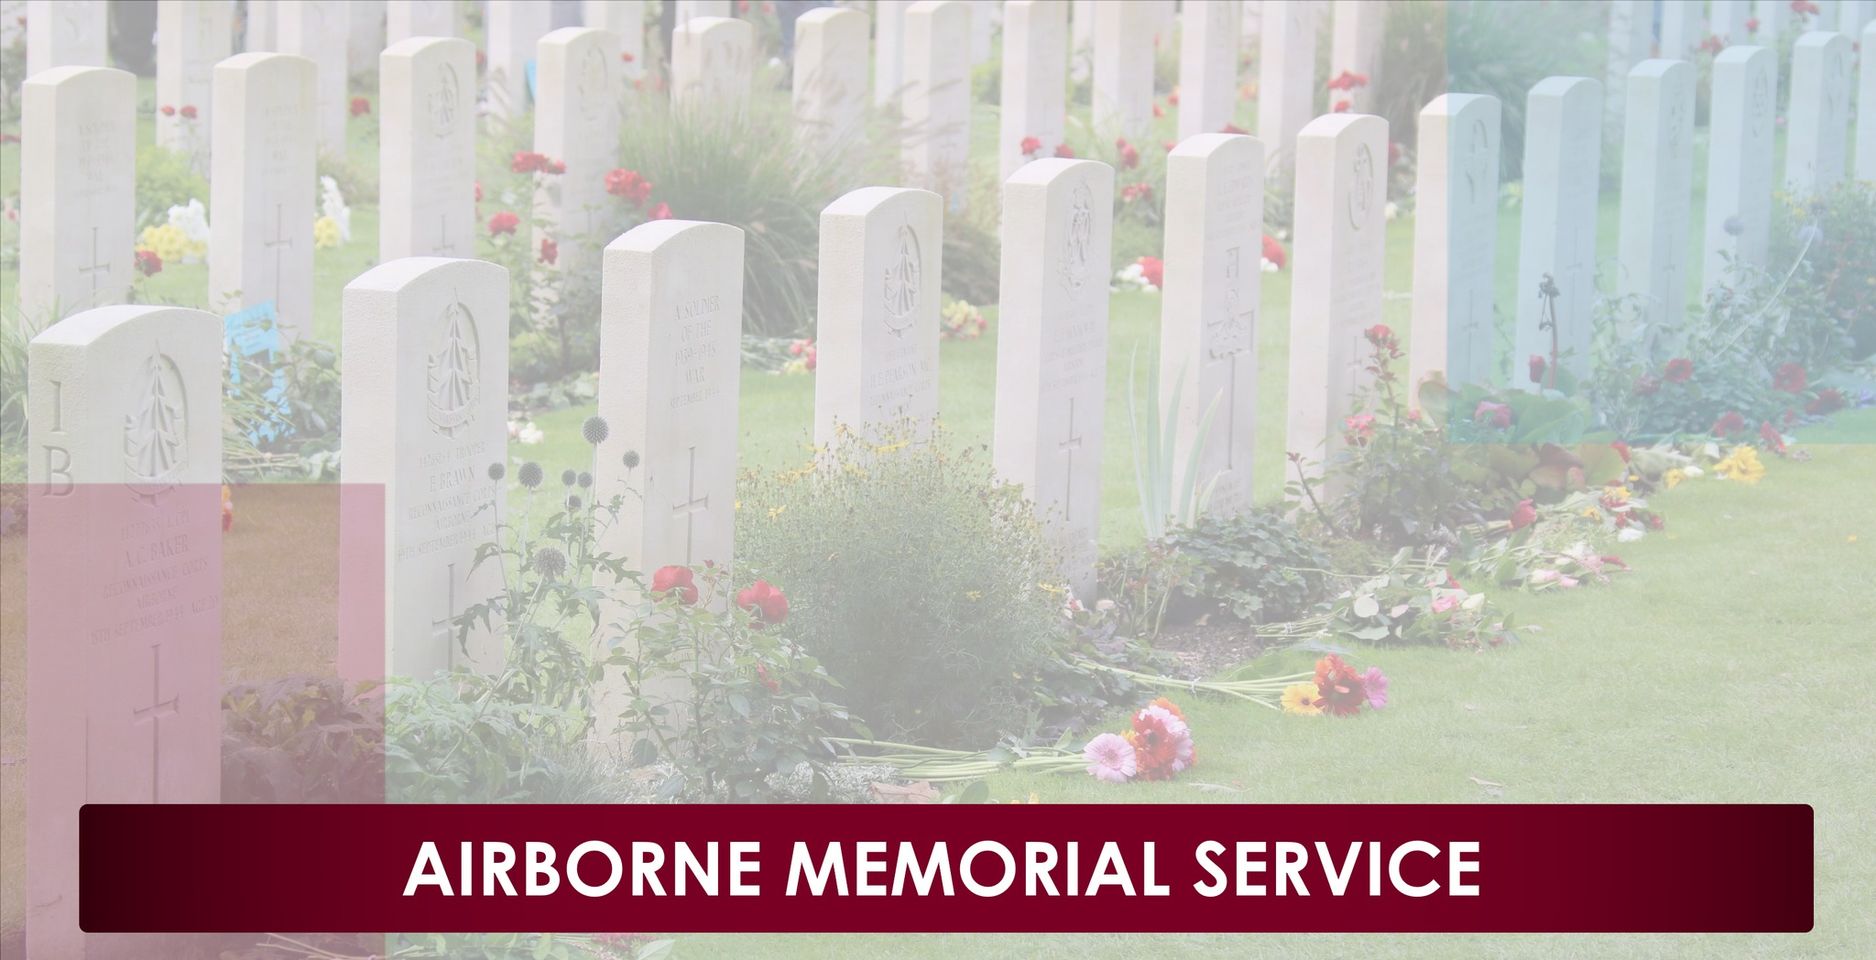 Airborne memorial service